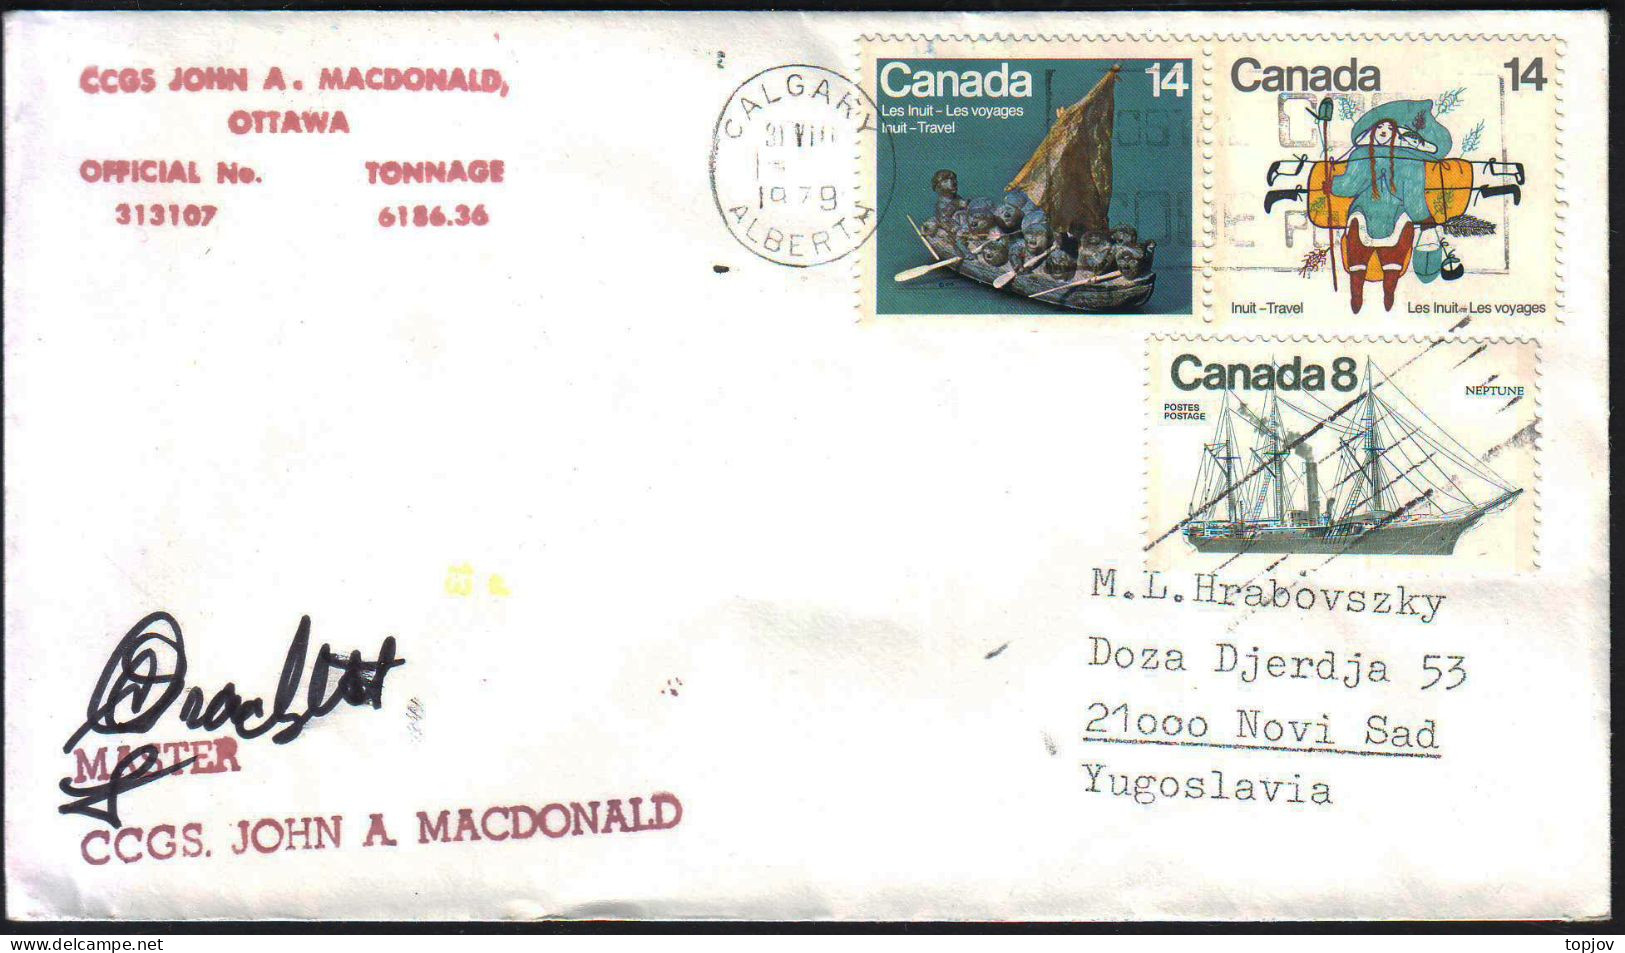 CANADA - CCGS JOHN A. MASDONALD - 1979 - Spedizioni Artiche